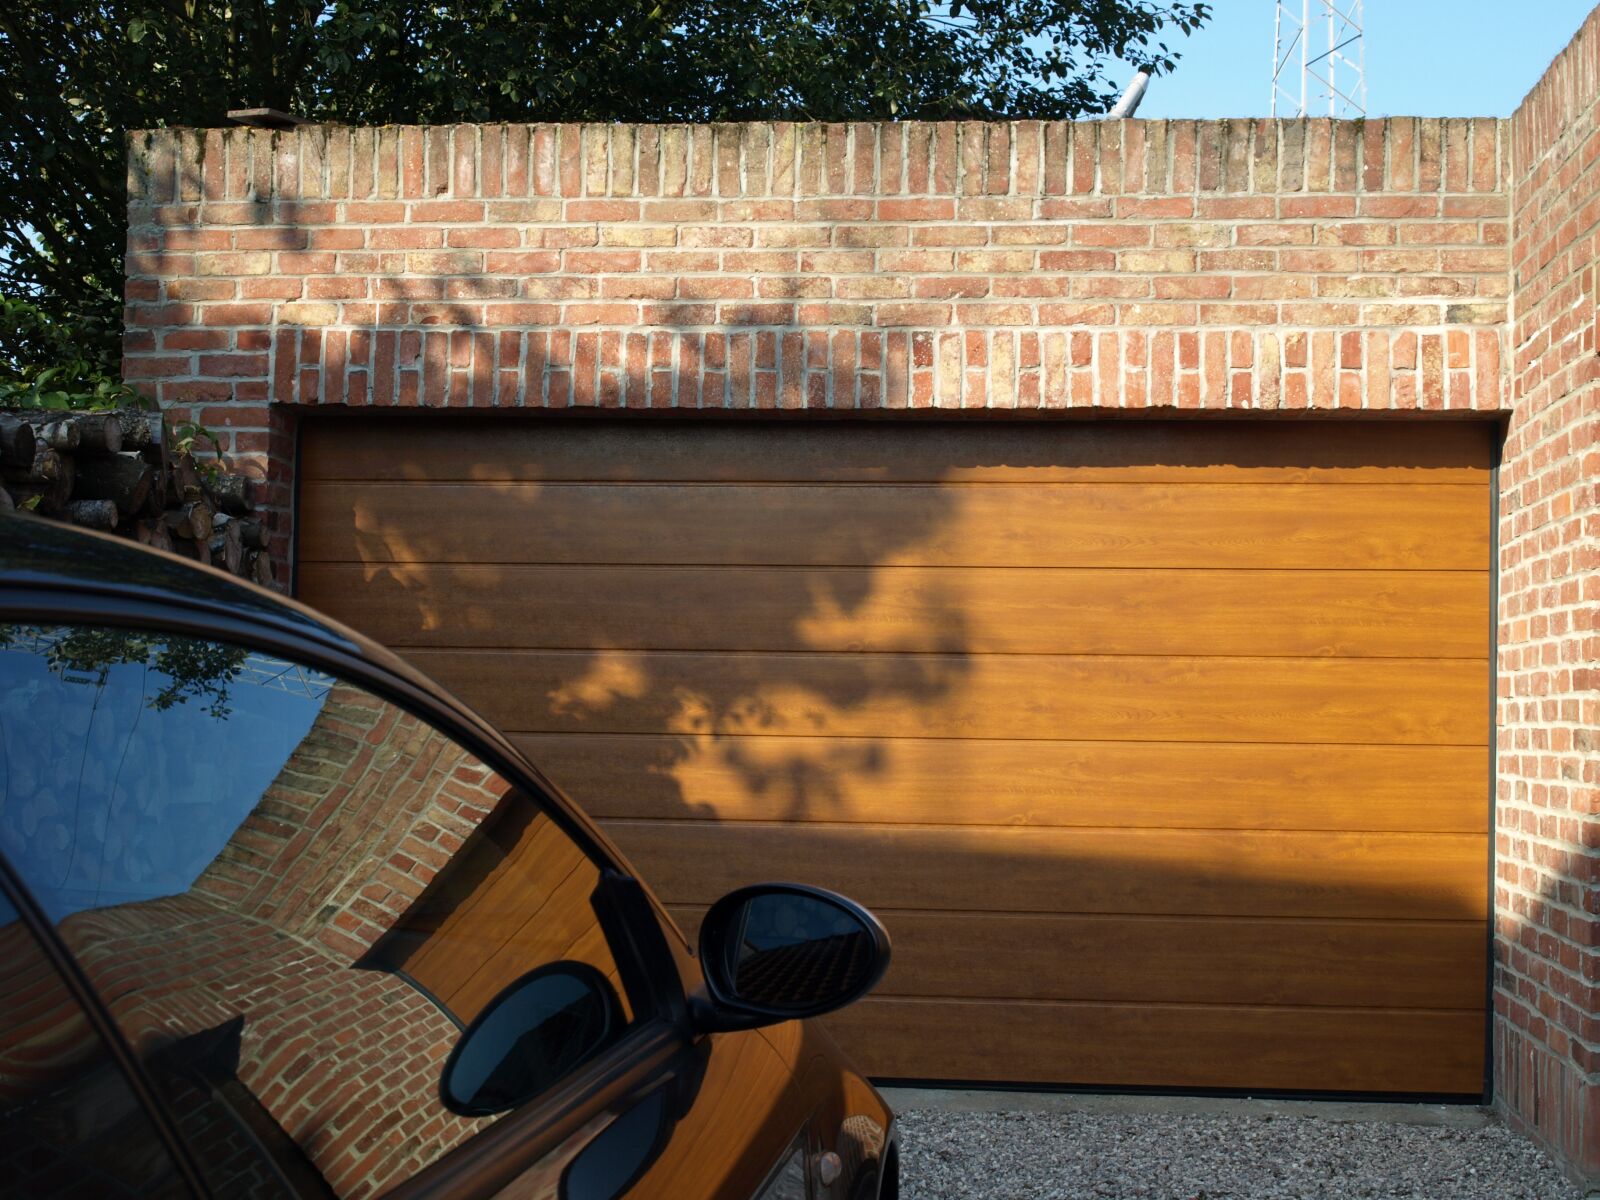 Olympus E-410 (EVOLT E-410) sample photo. Garage door, golden oak photography